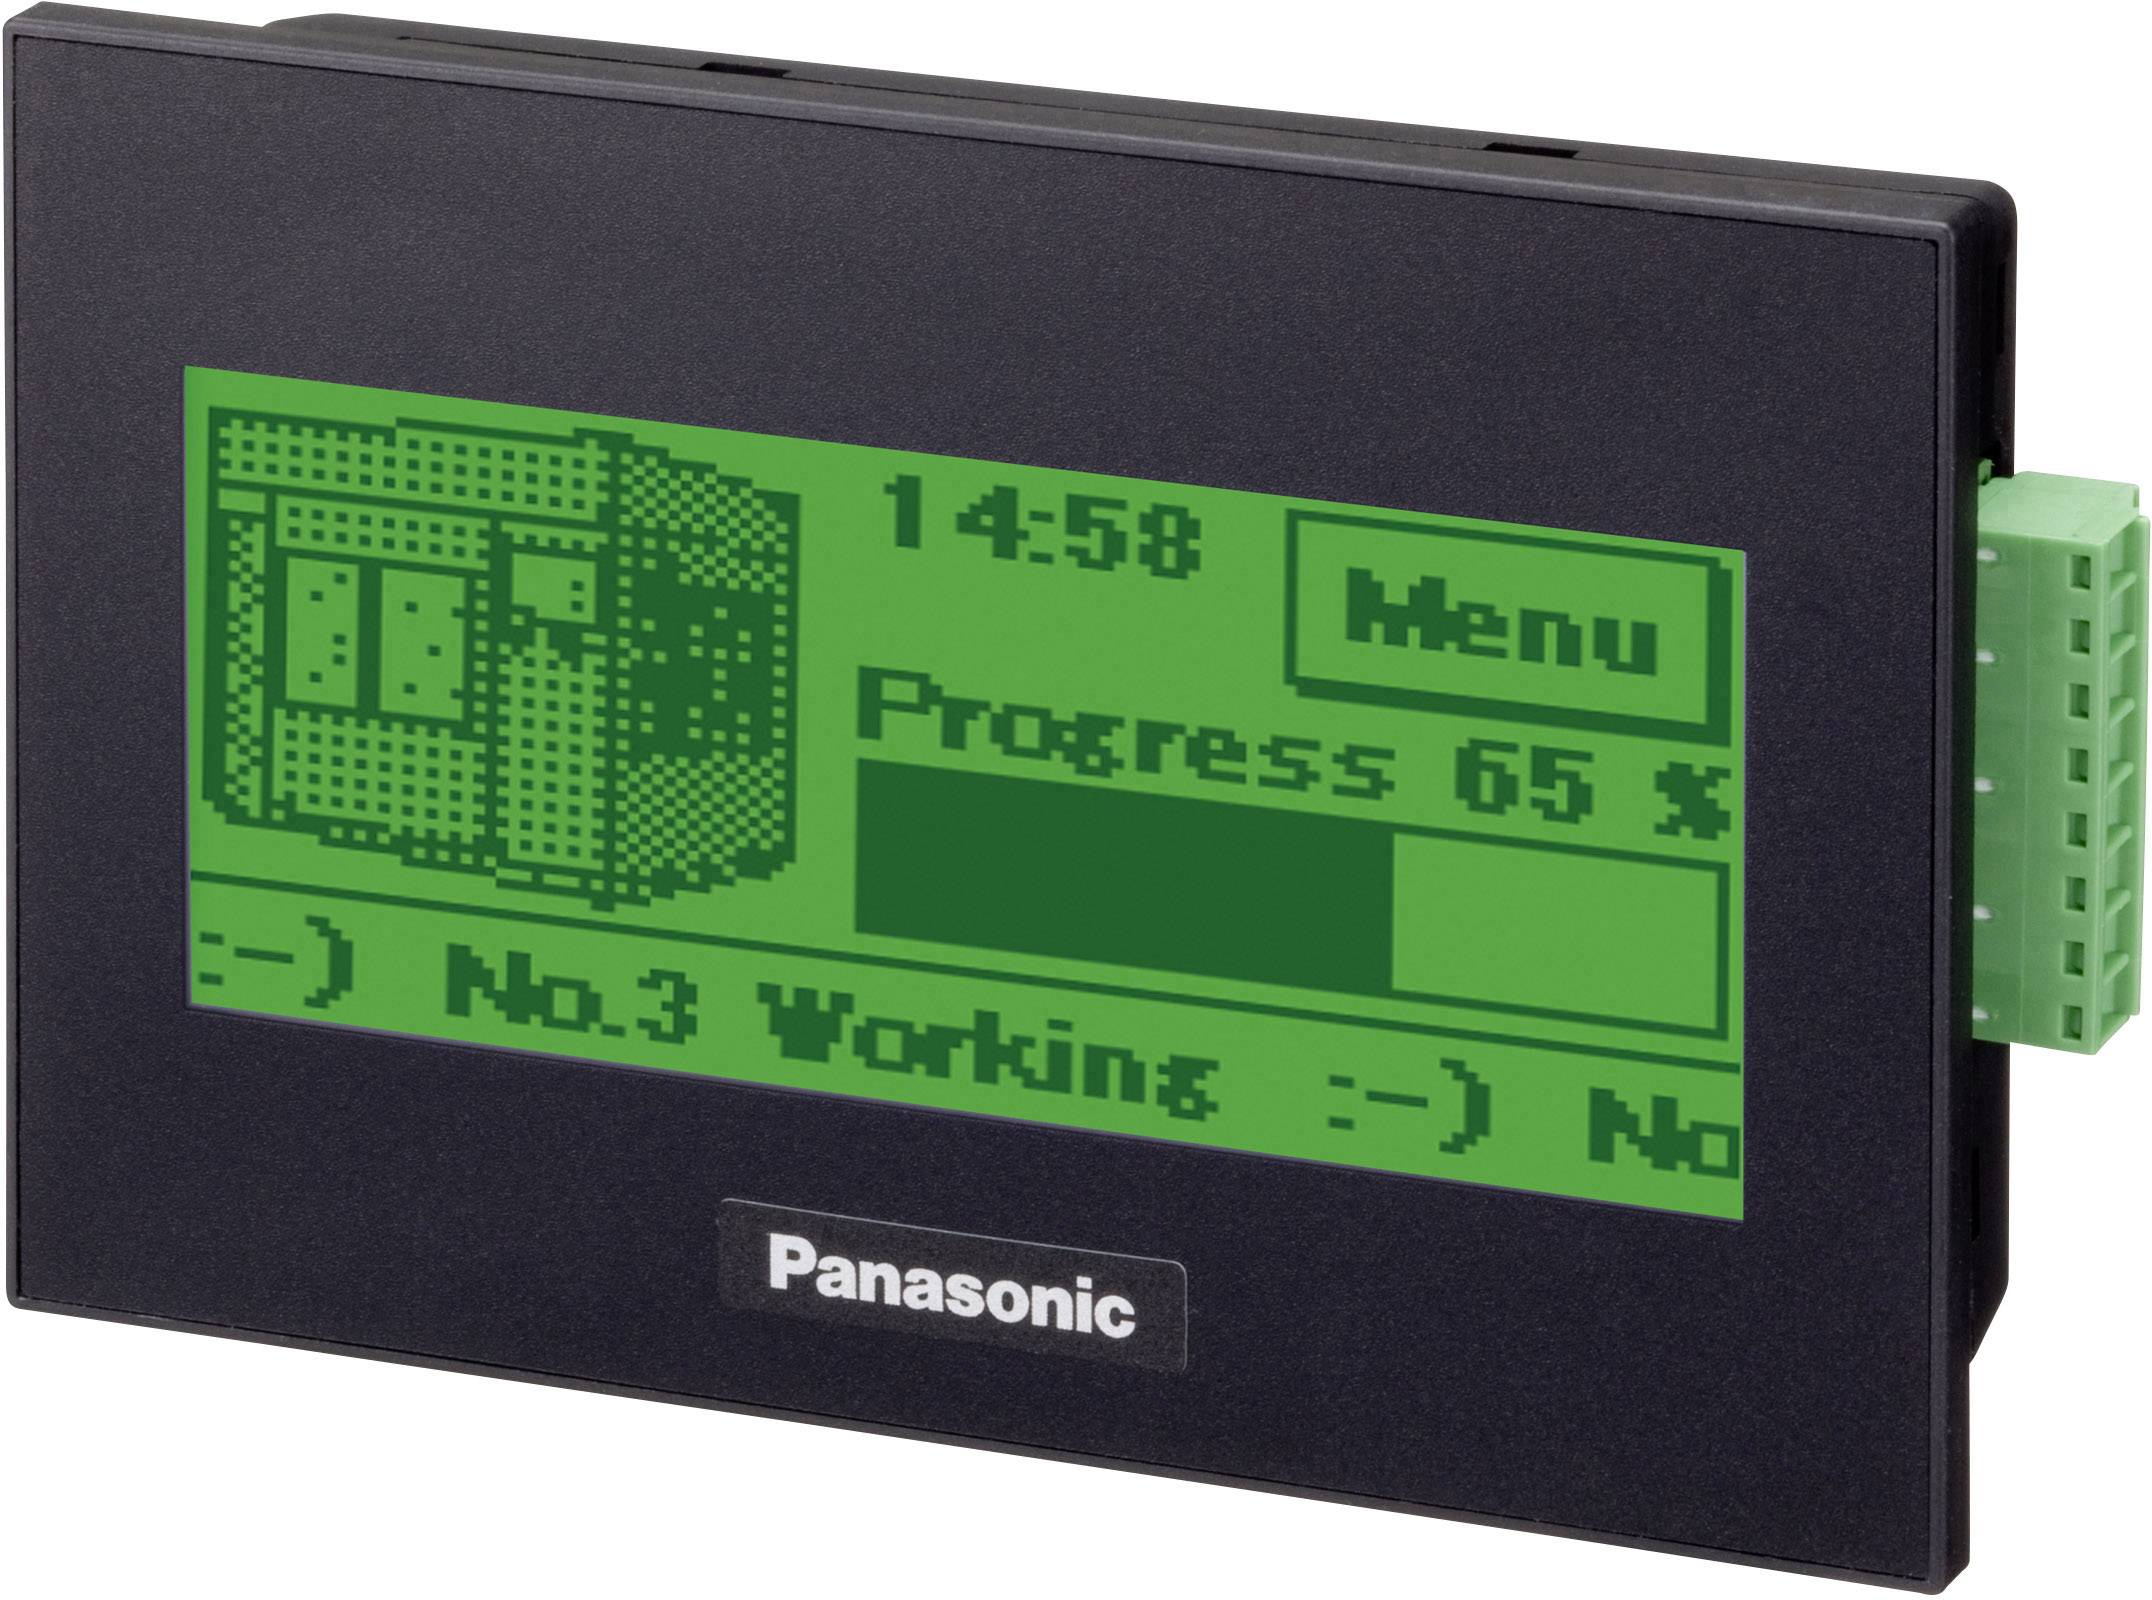 PANASONIC SPS-Displayerweiterung Panasonic GT02 Bediengerät AIG02GQ02D 5 V/DC